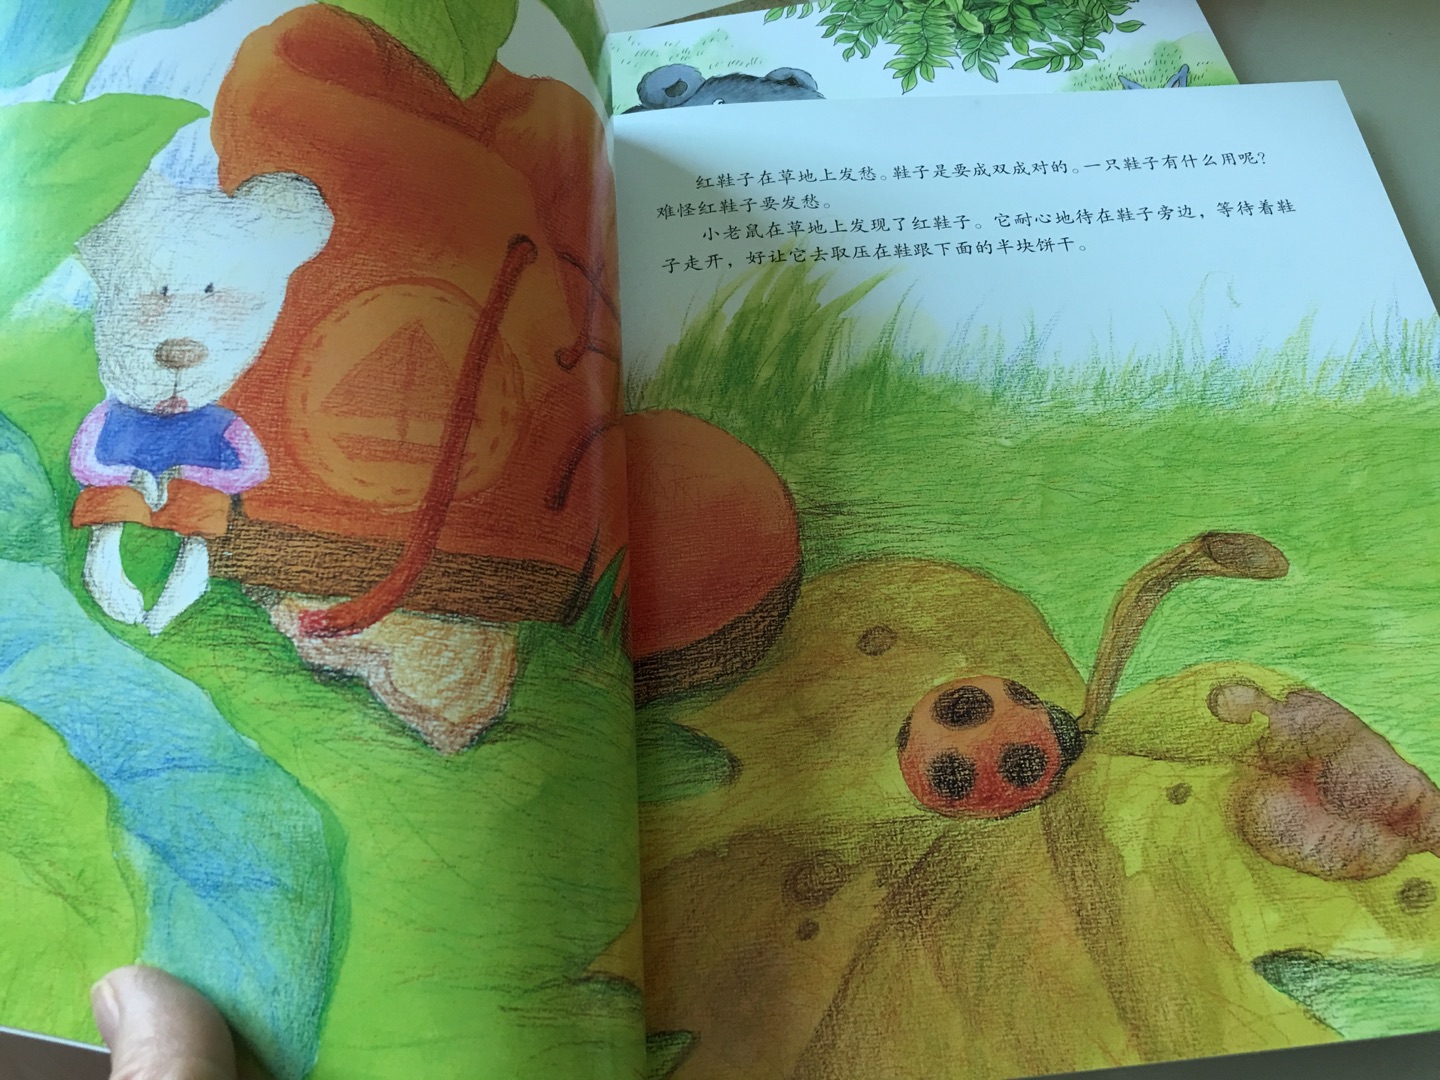 这套书纸质很好，彩色的图，一年级的孩子很喜欢，适合读，满意，物流很快